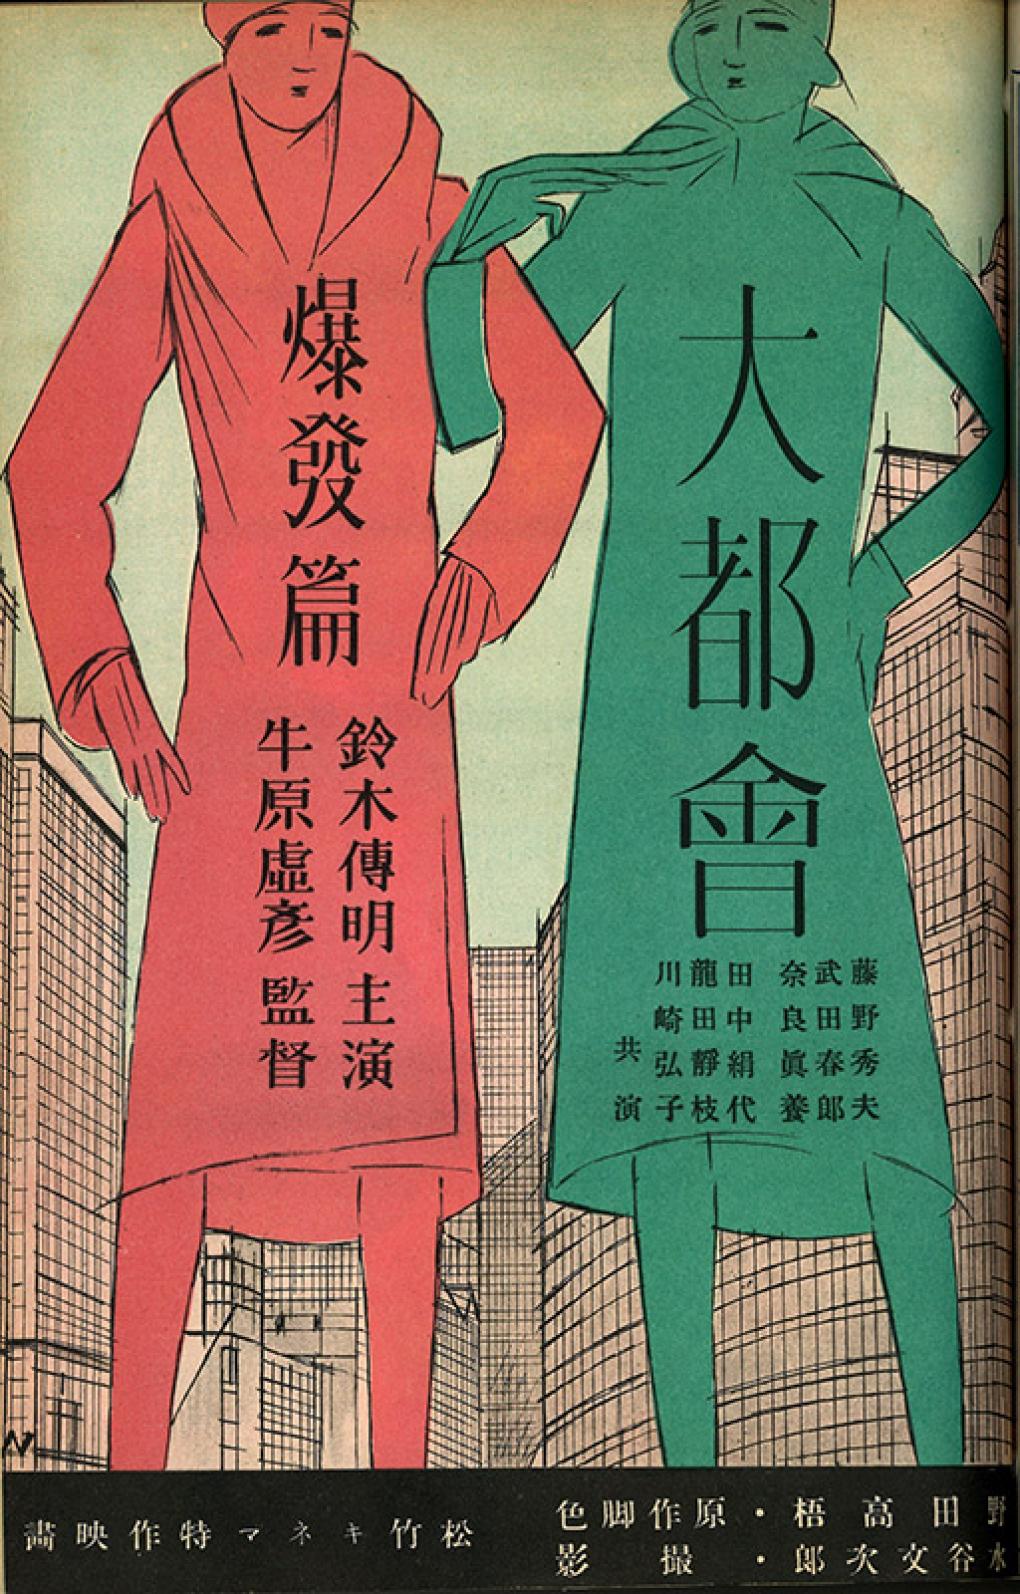 大都会：労働篇 (Big City Chapter on Labor) advertisement in Kinema Junpo (July 1, 1930, no. 370)